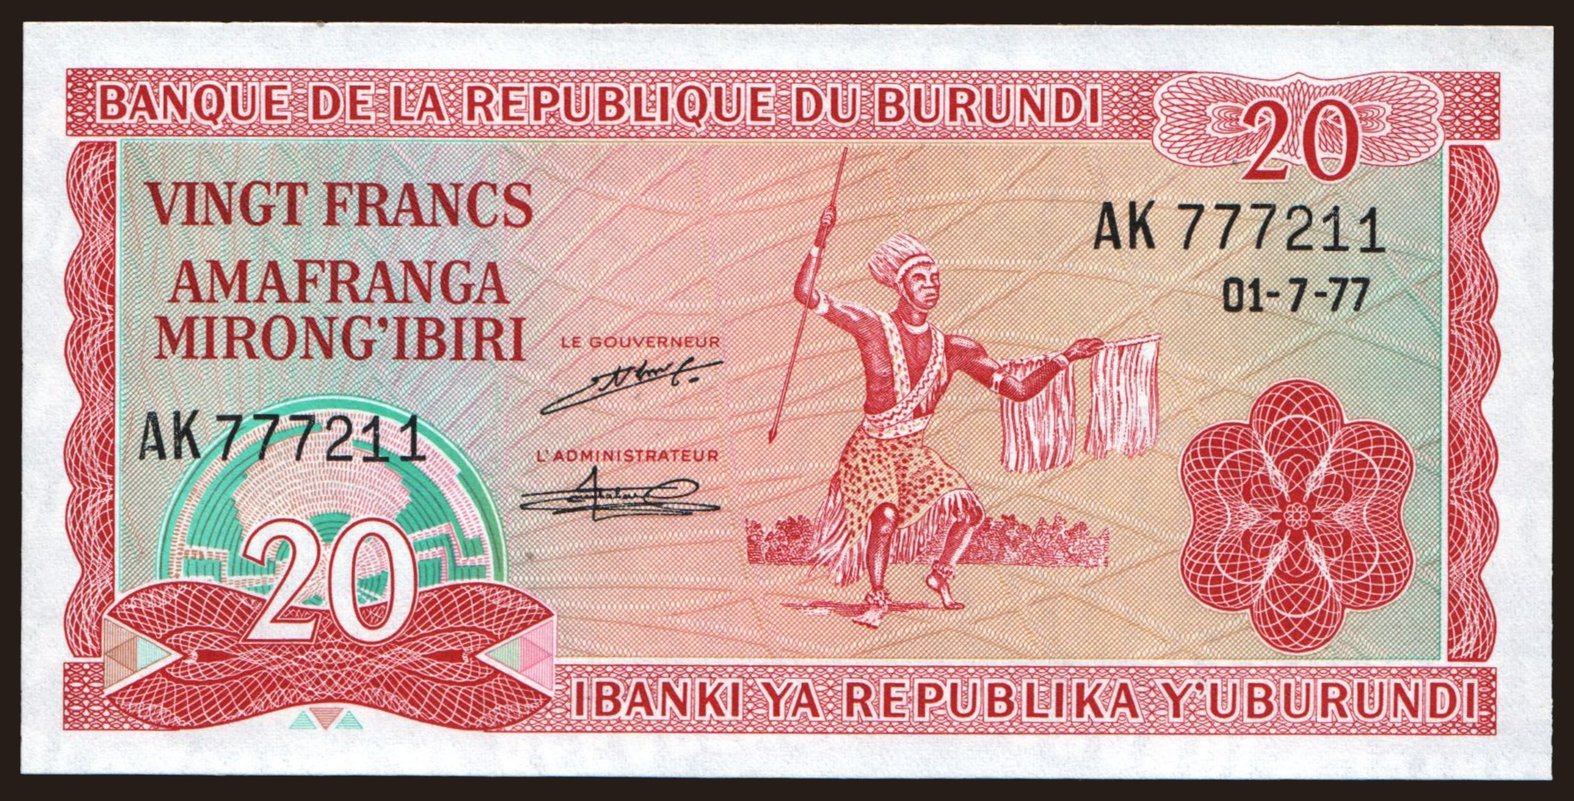 20 francs, 1977